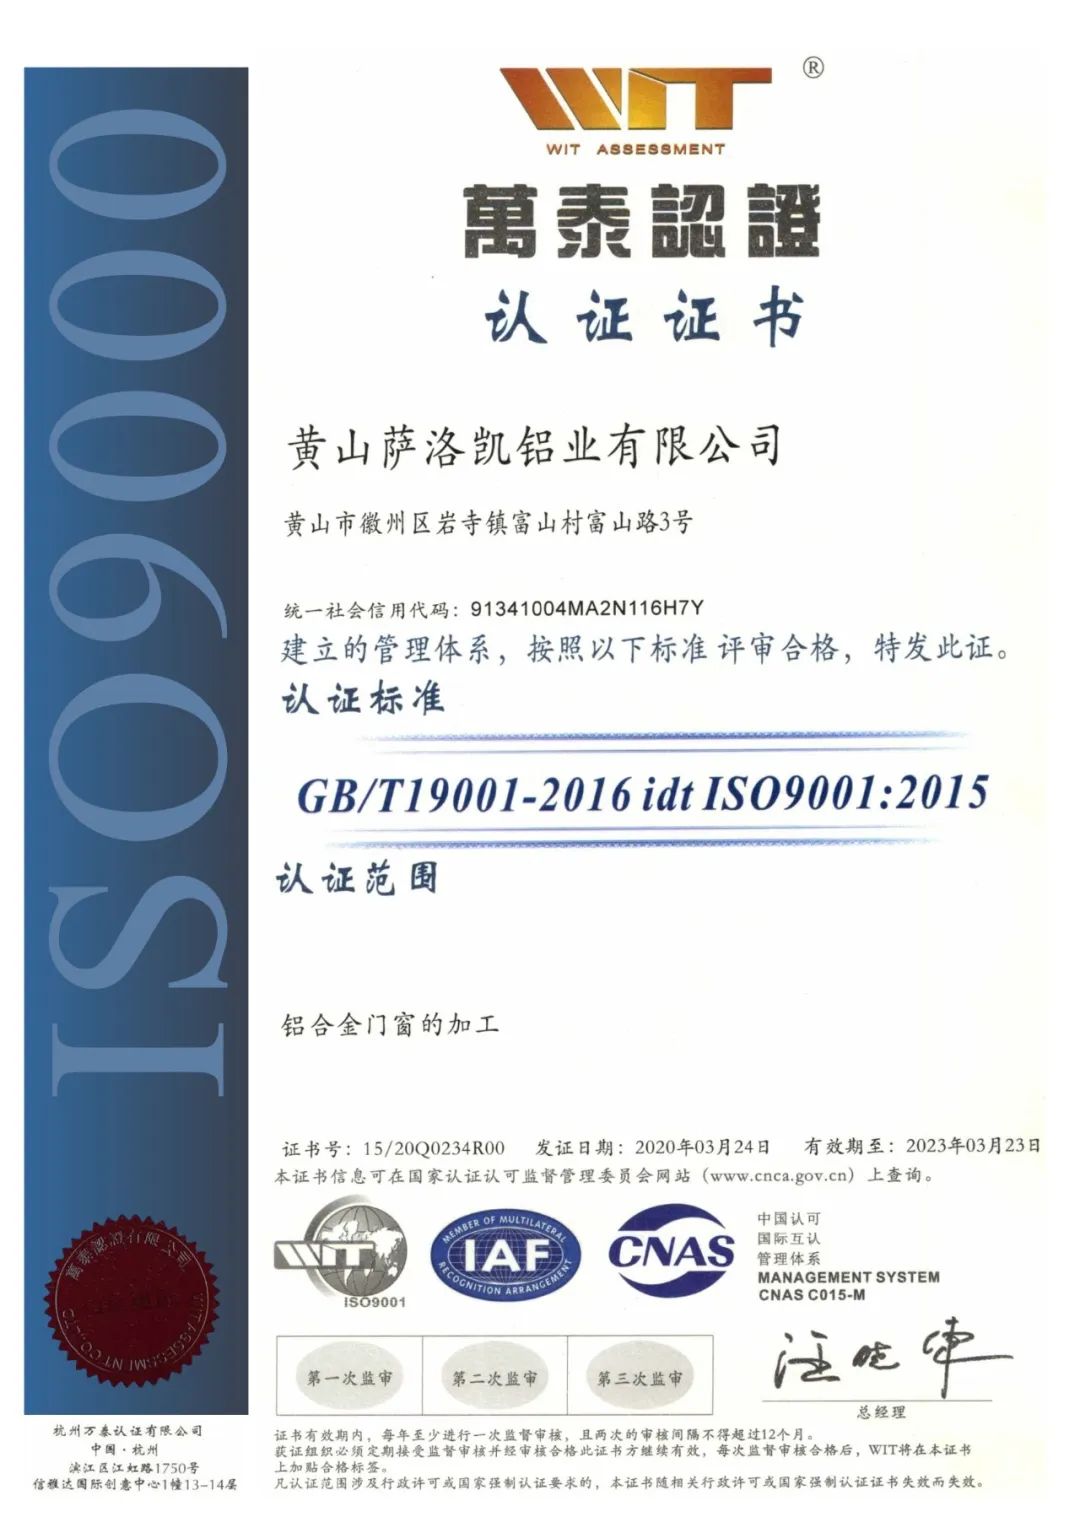 门窗于2020年3月24日顺利通过iso 9001:2015管理体系认证,并取得证书